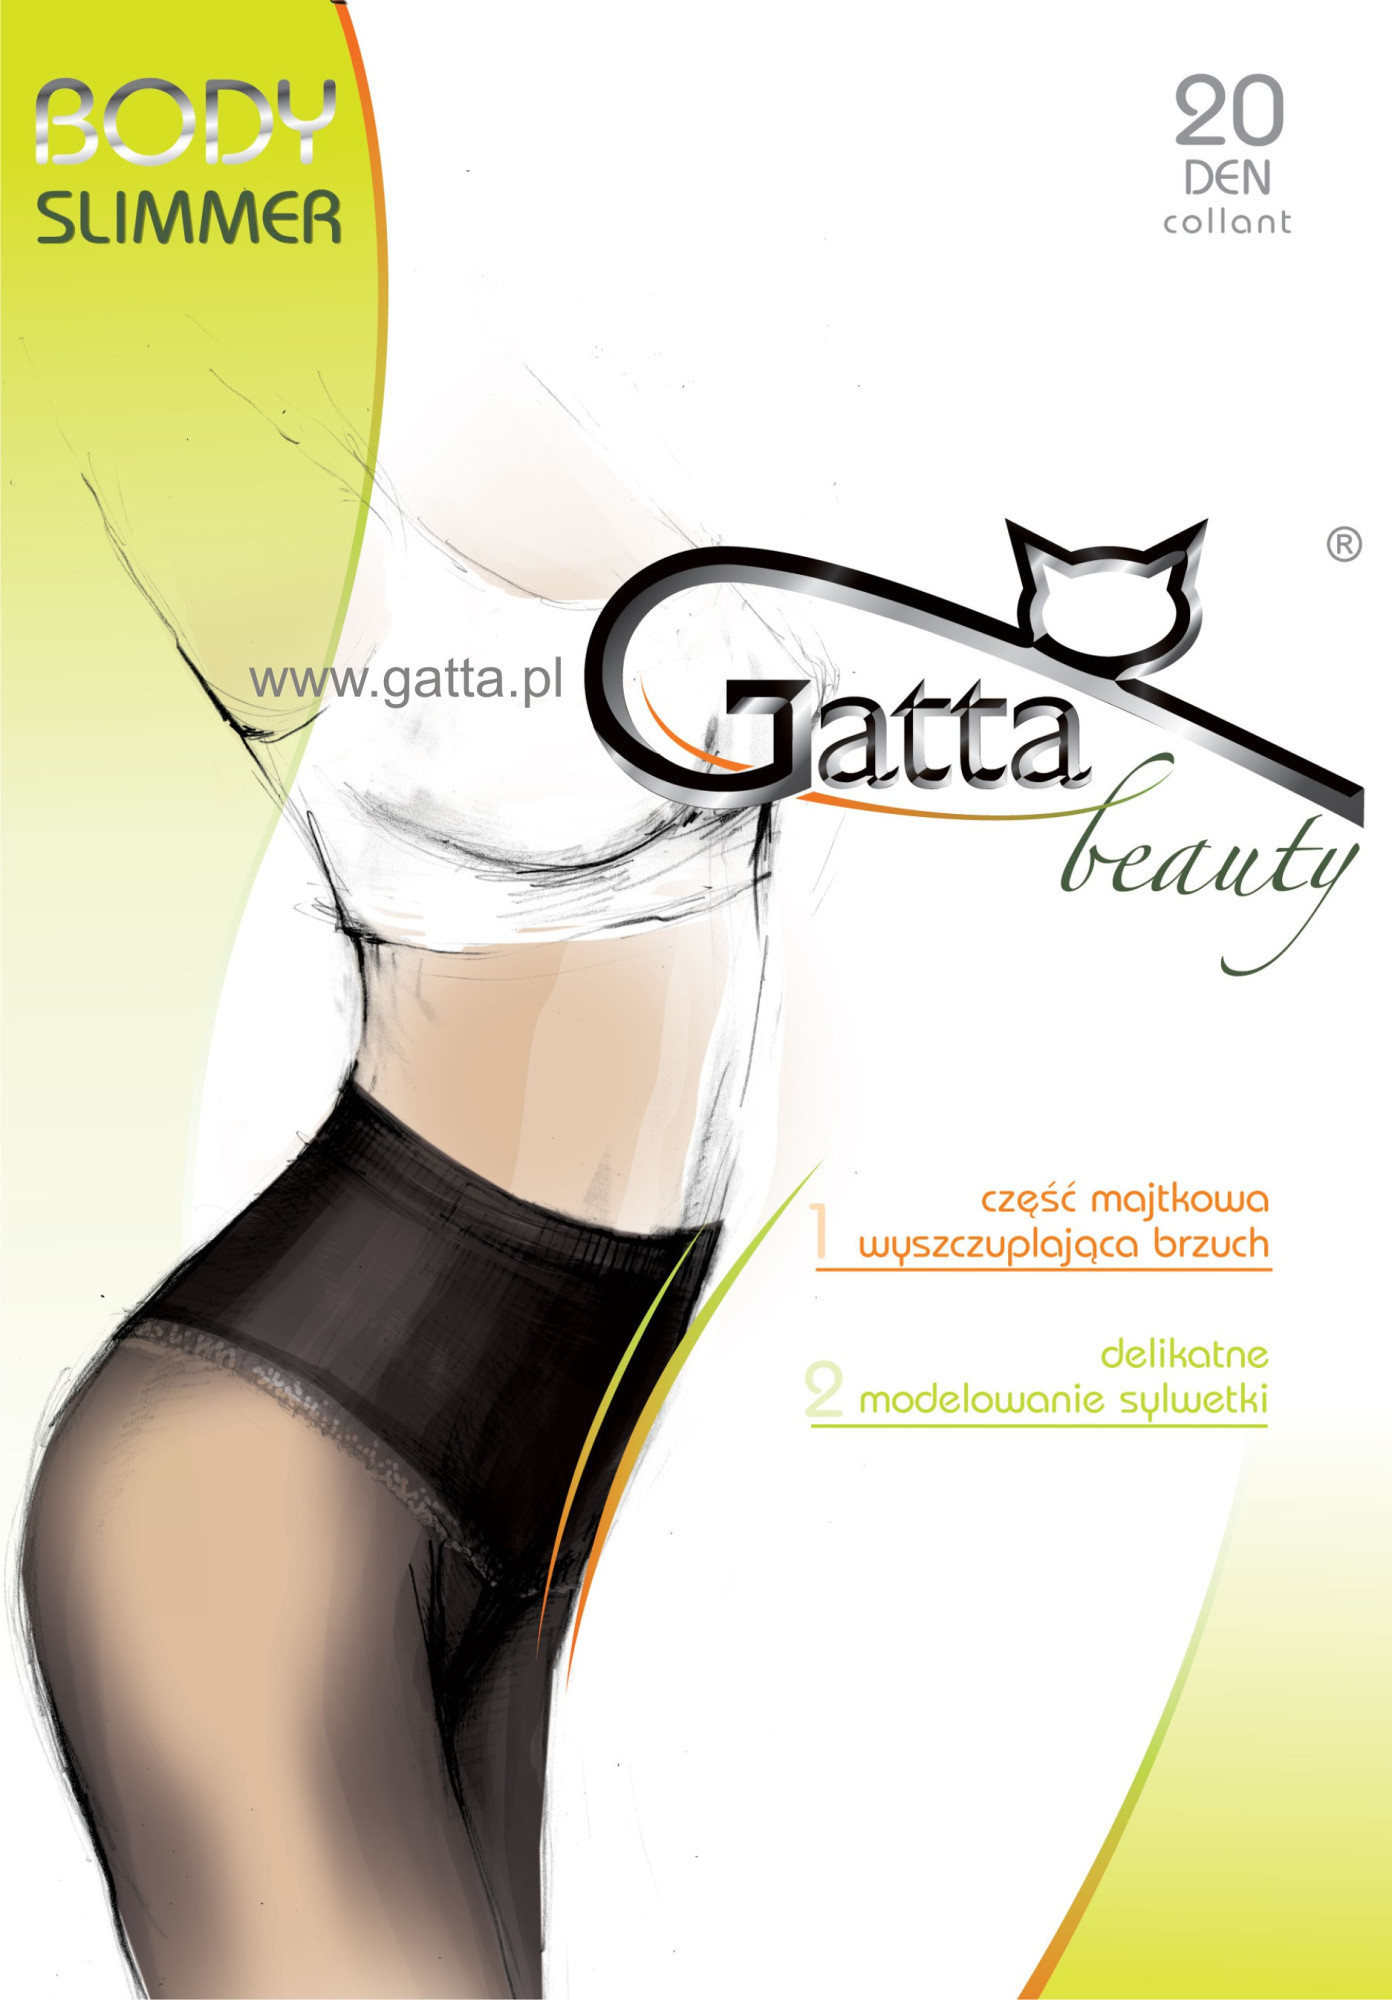 Dámské punčochové kalhoty Body model 7462551 20 den béžová/odstín béžové 2S - Gatta